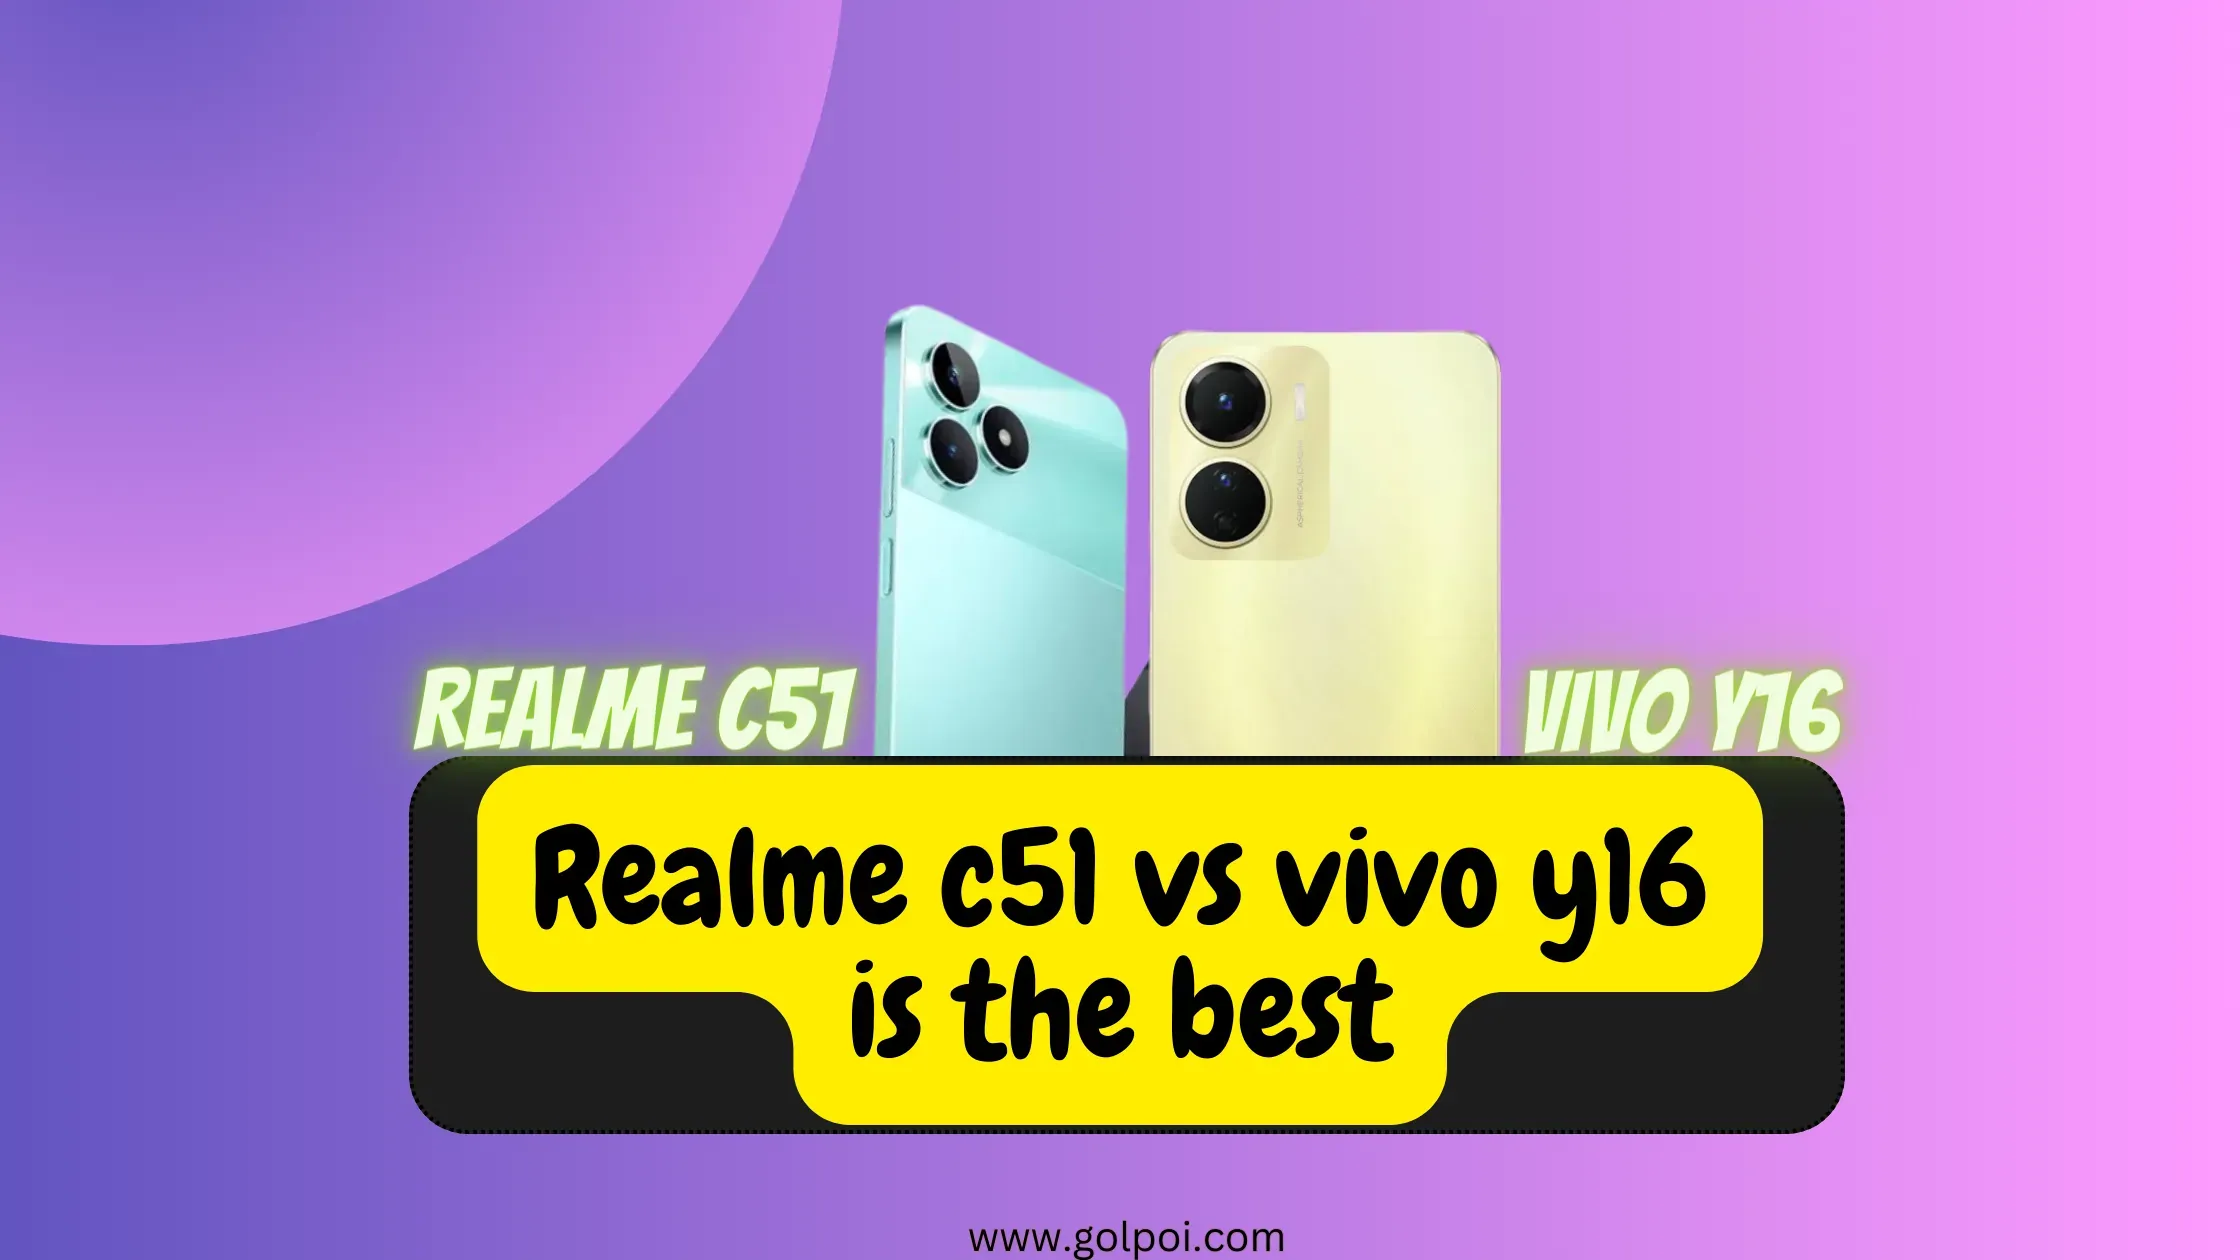 Realme c51 vs vivo y16